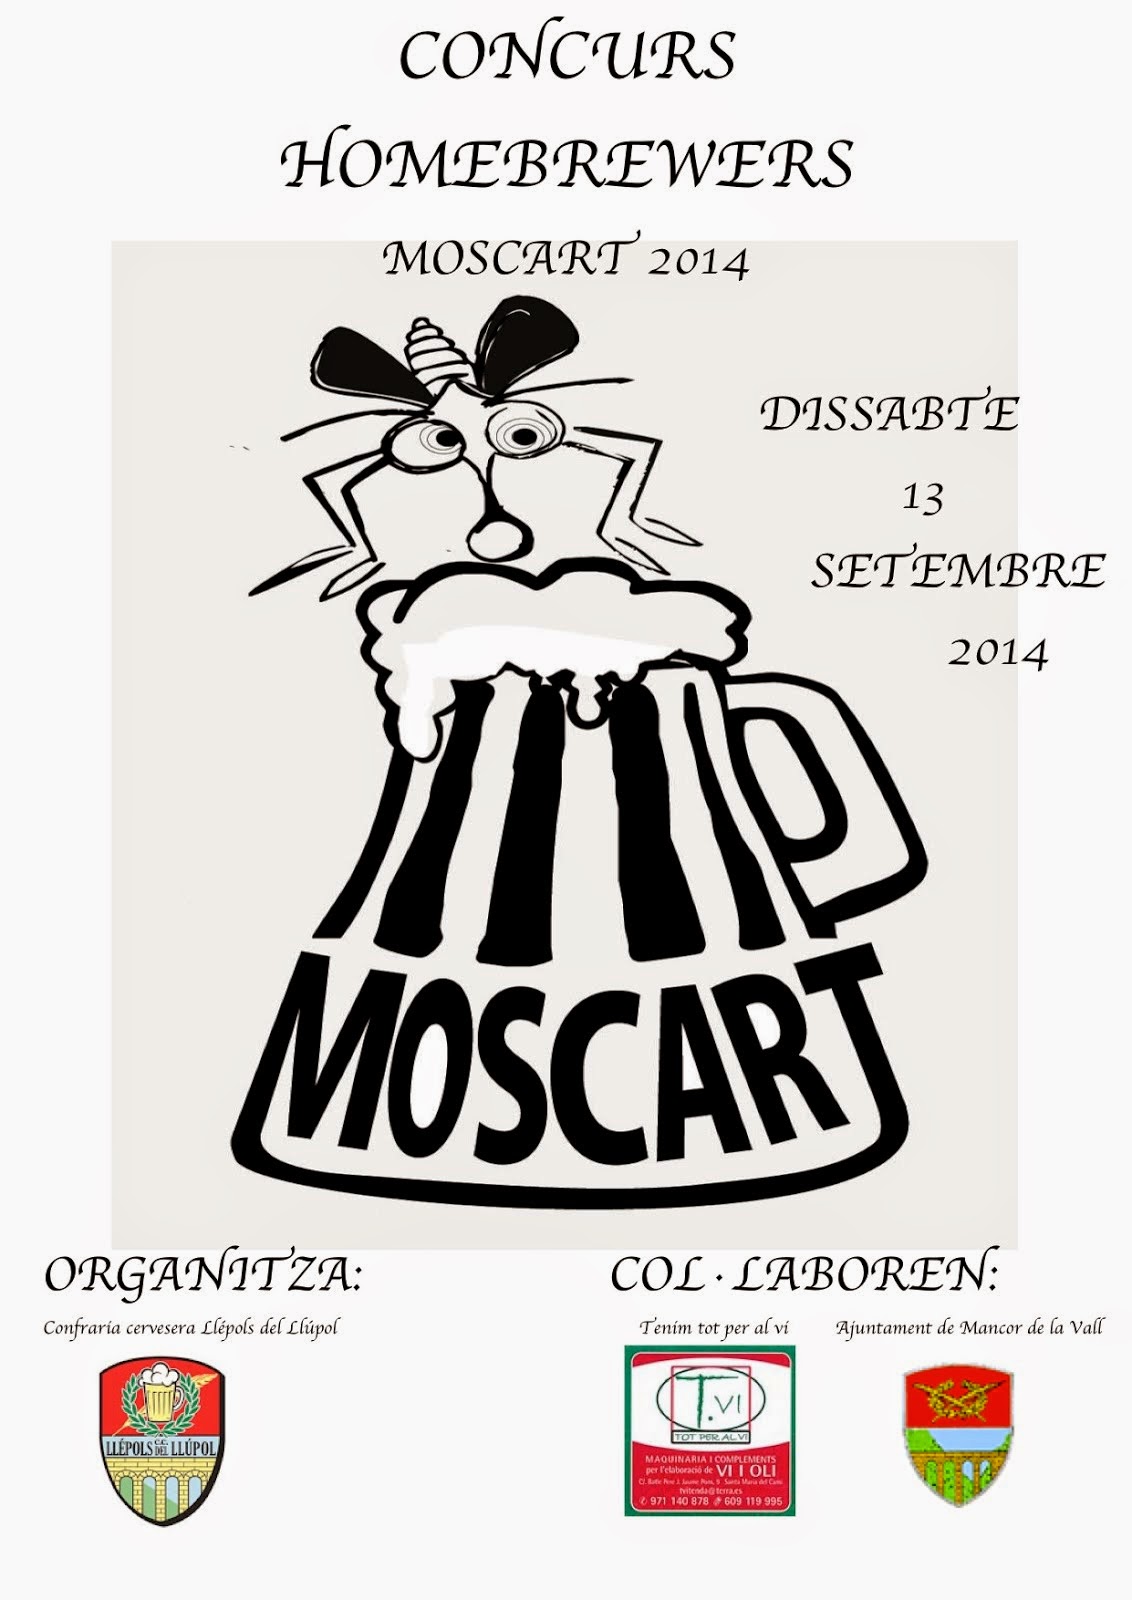 MOSCART 2014